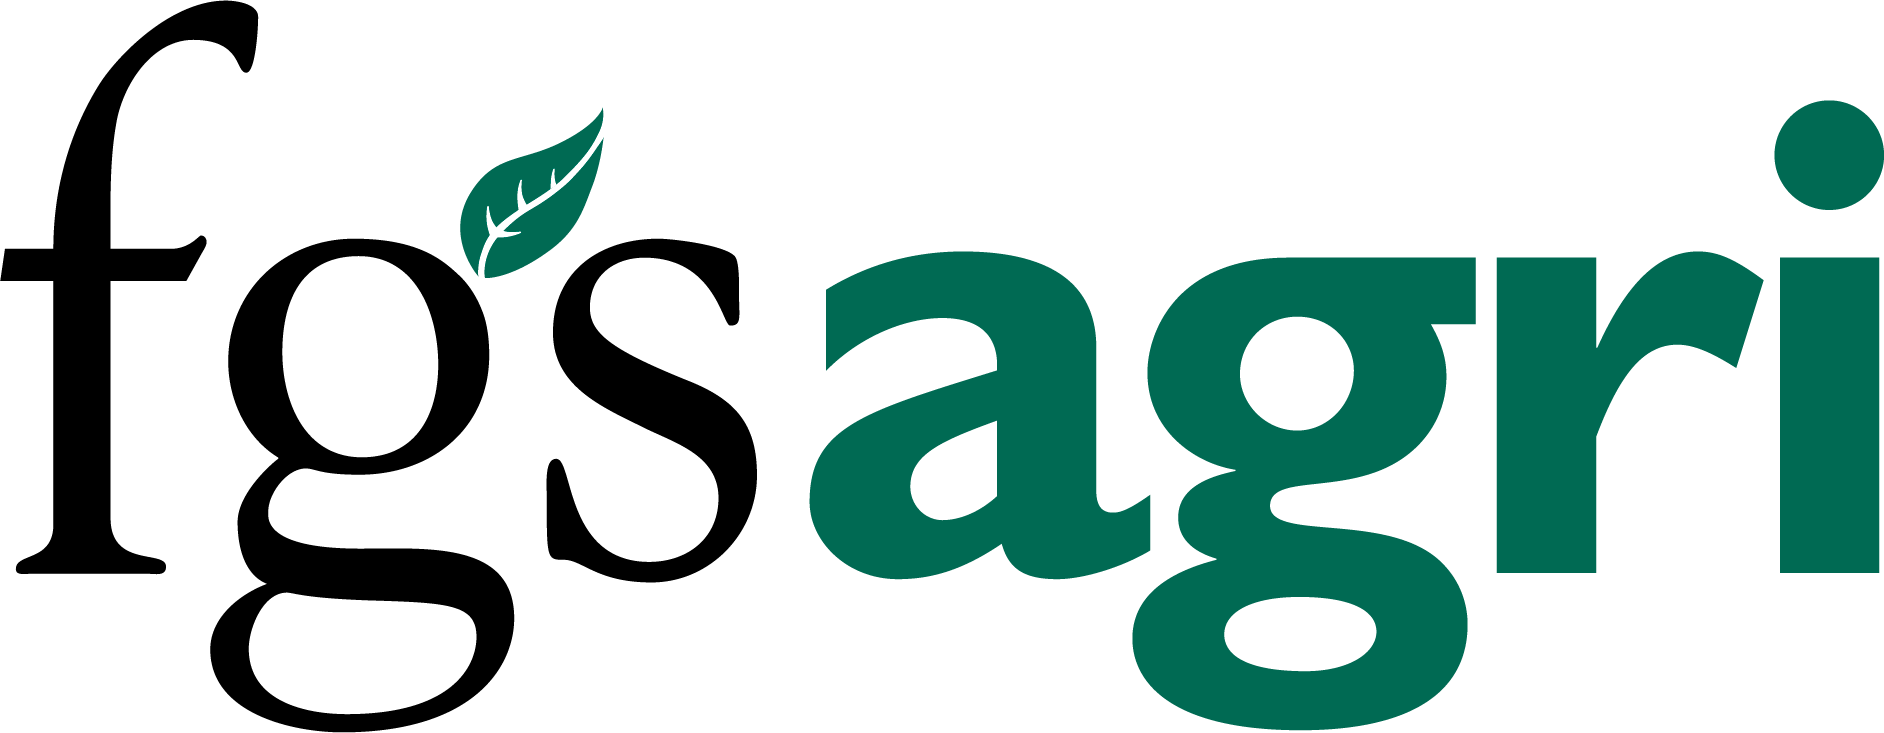 logo for FGS Agri Ltd